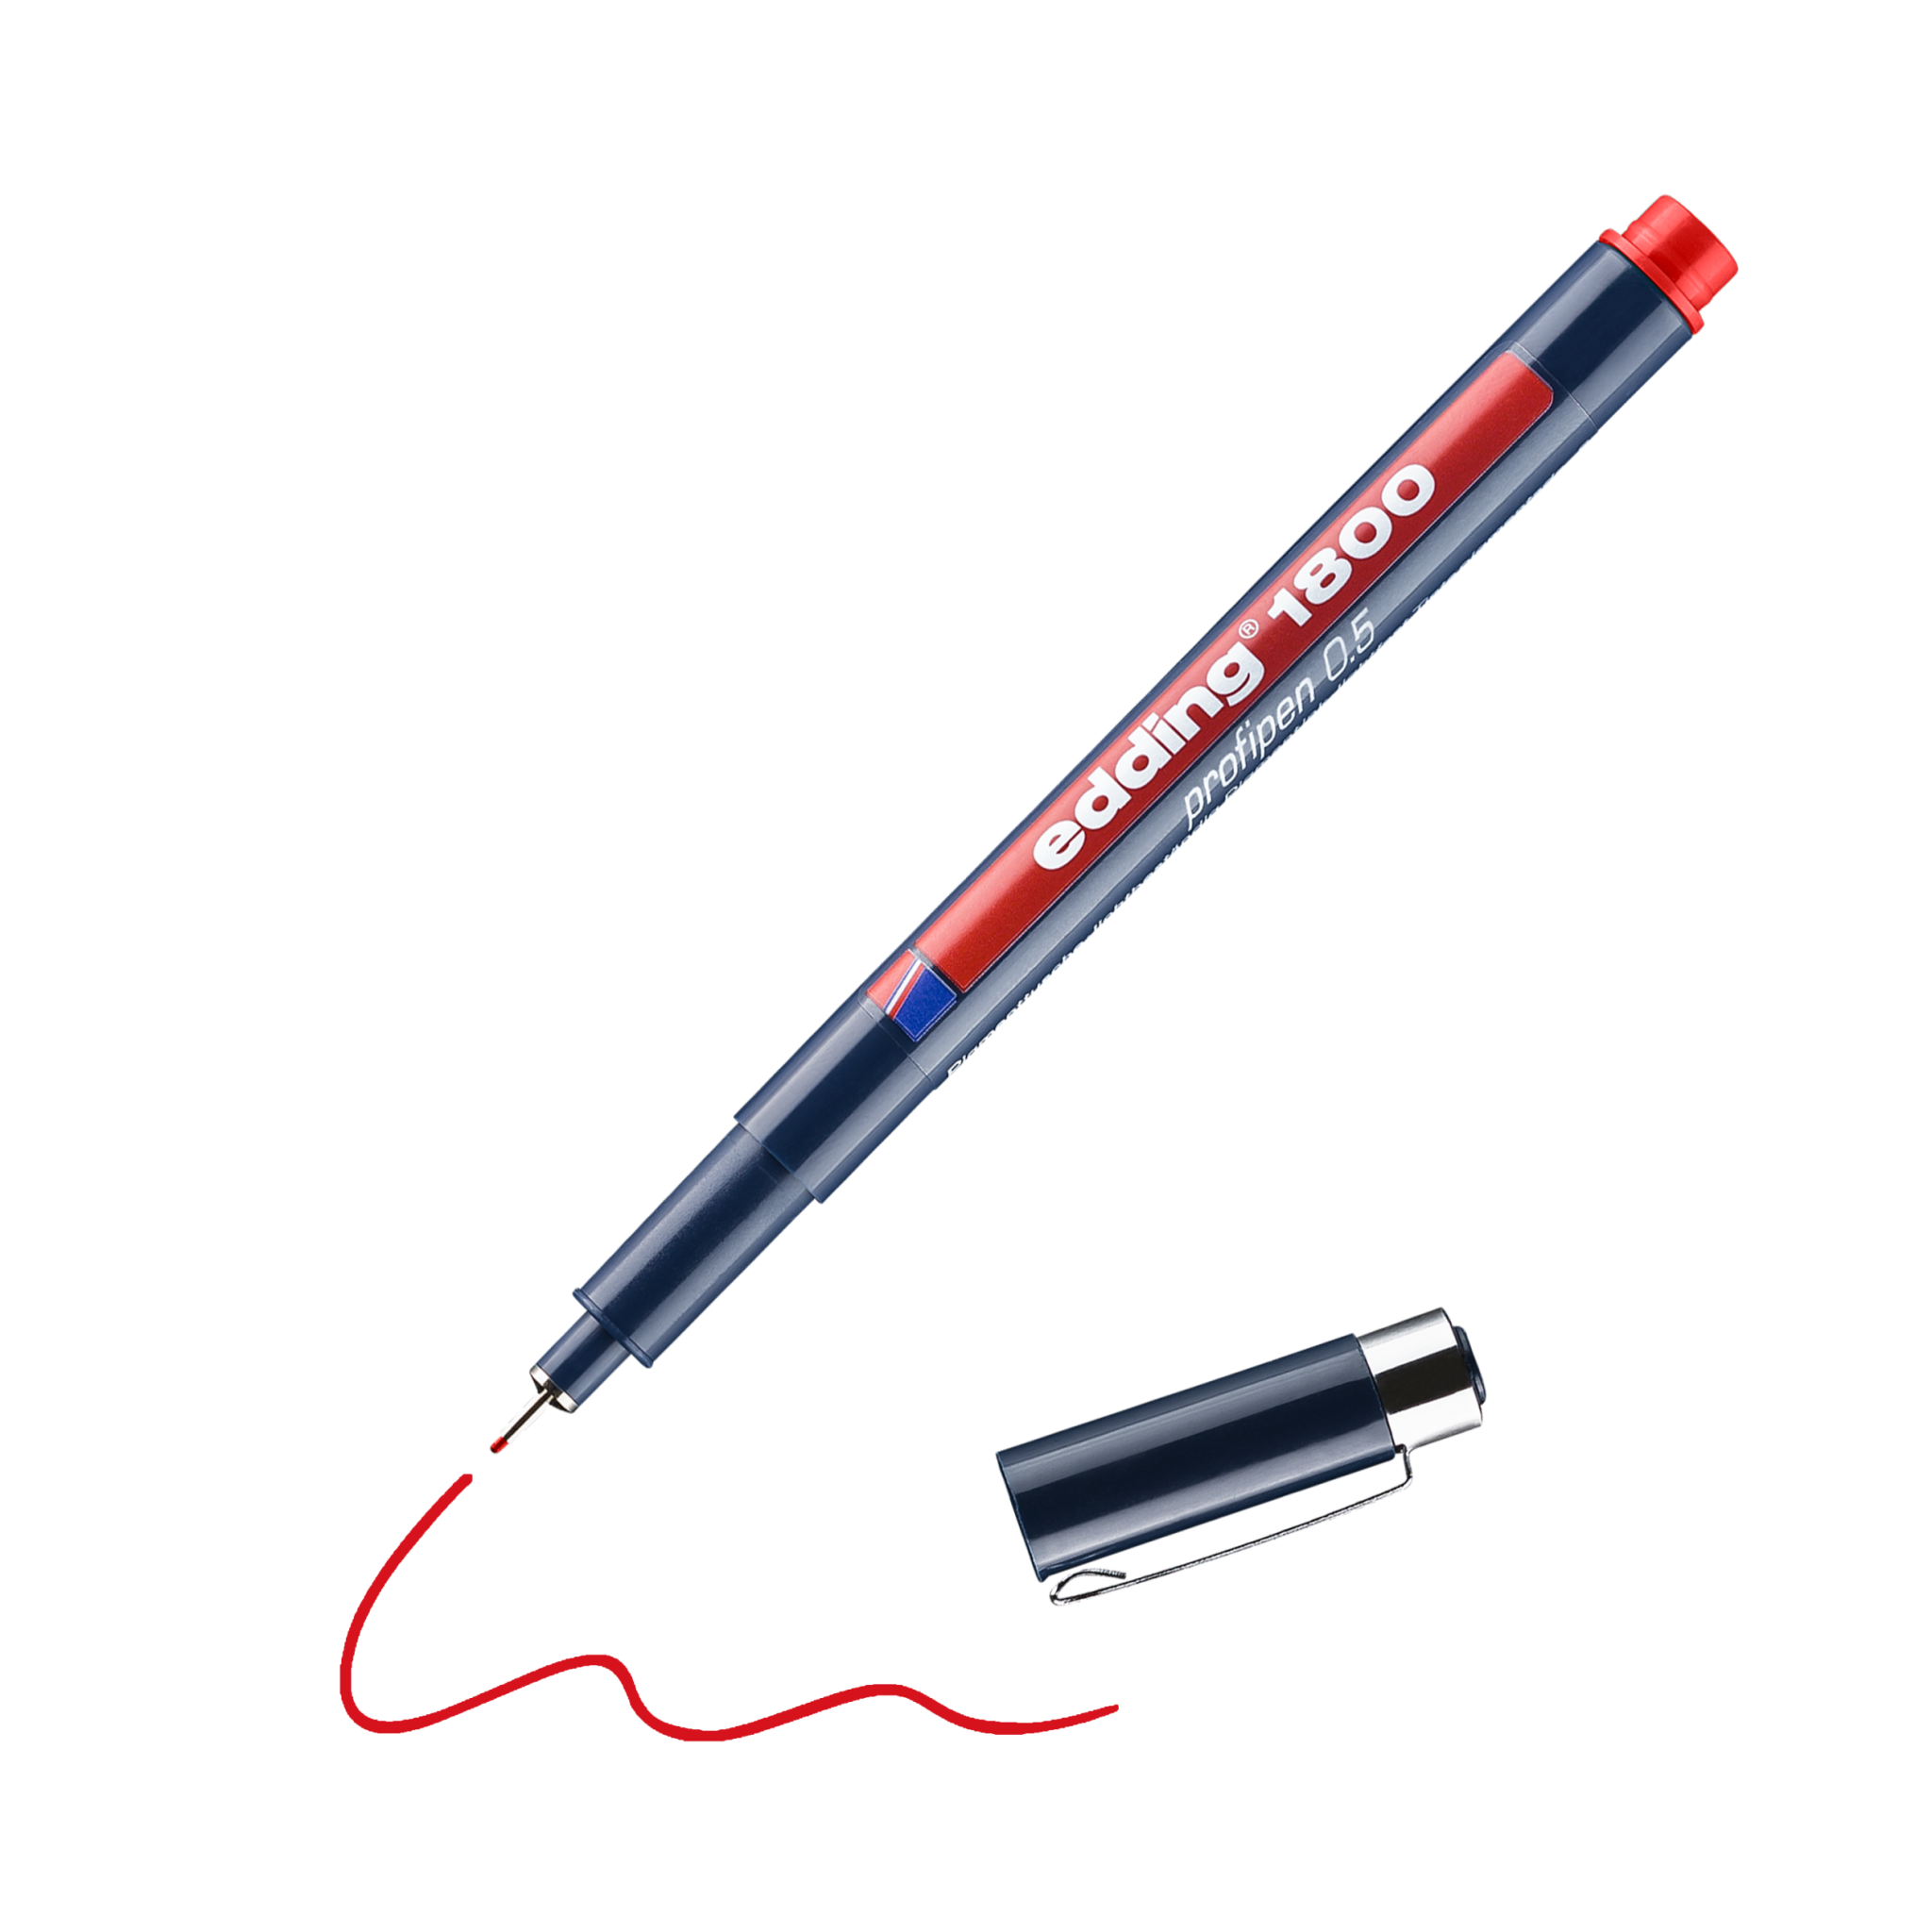 Ein roter Präzisionsmarkierstift edding 1800 Präzisionsfeinschreiber mit abgenommener Kappe, der eine rote Linie auf schwarzem Hintergrund zeichnet.